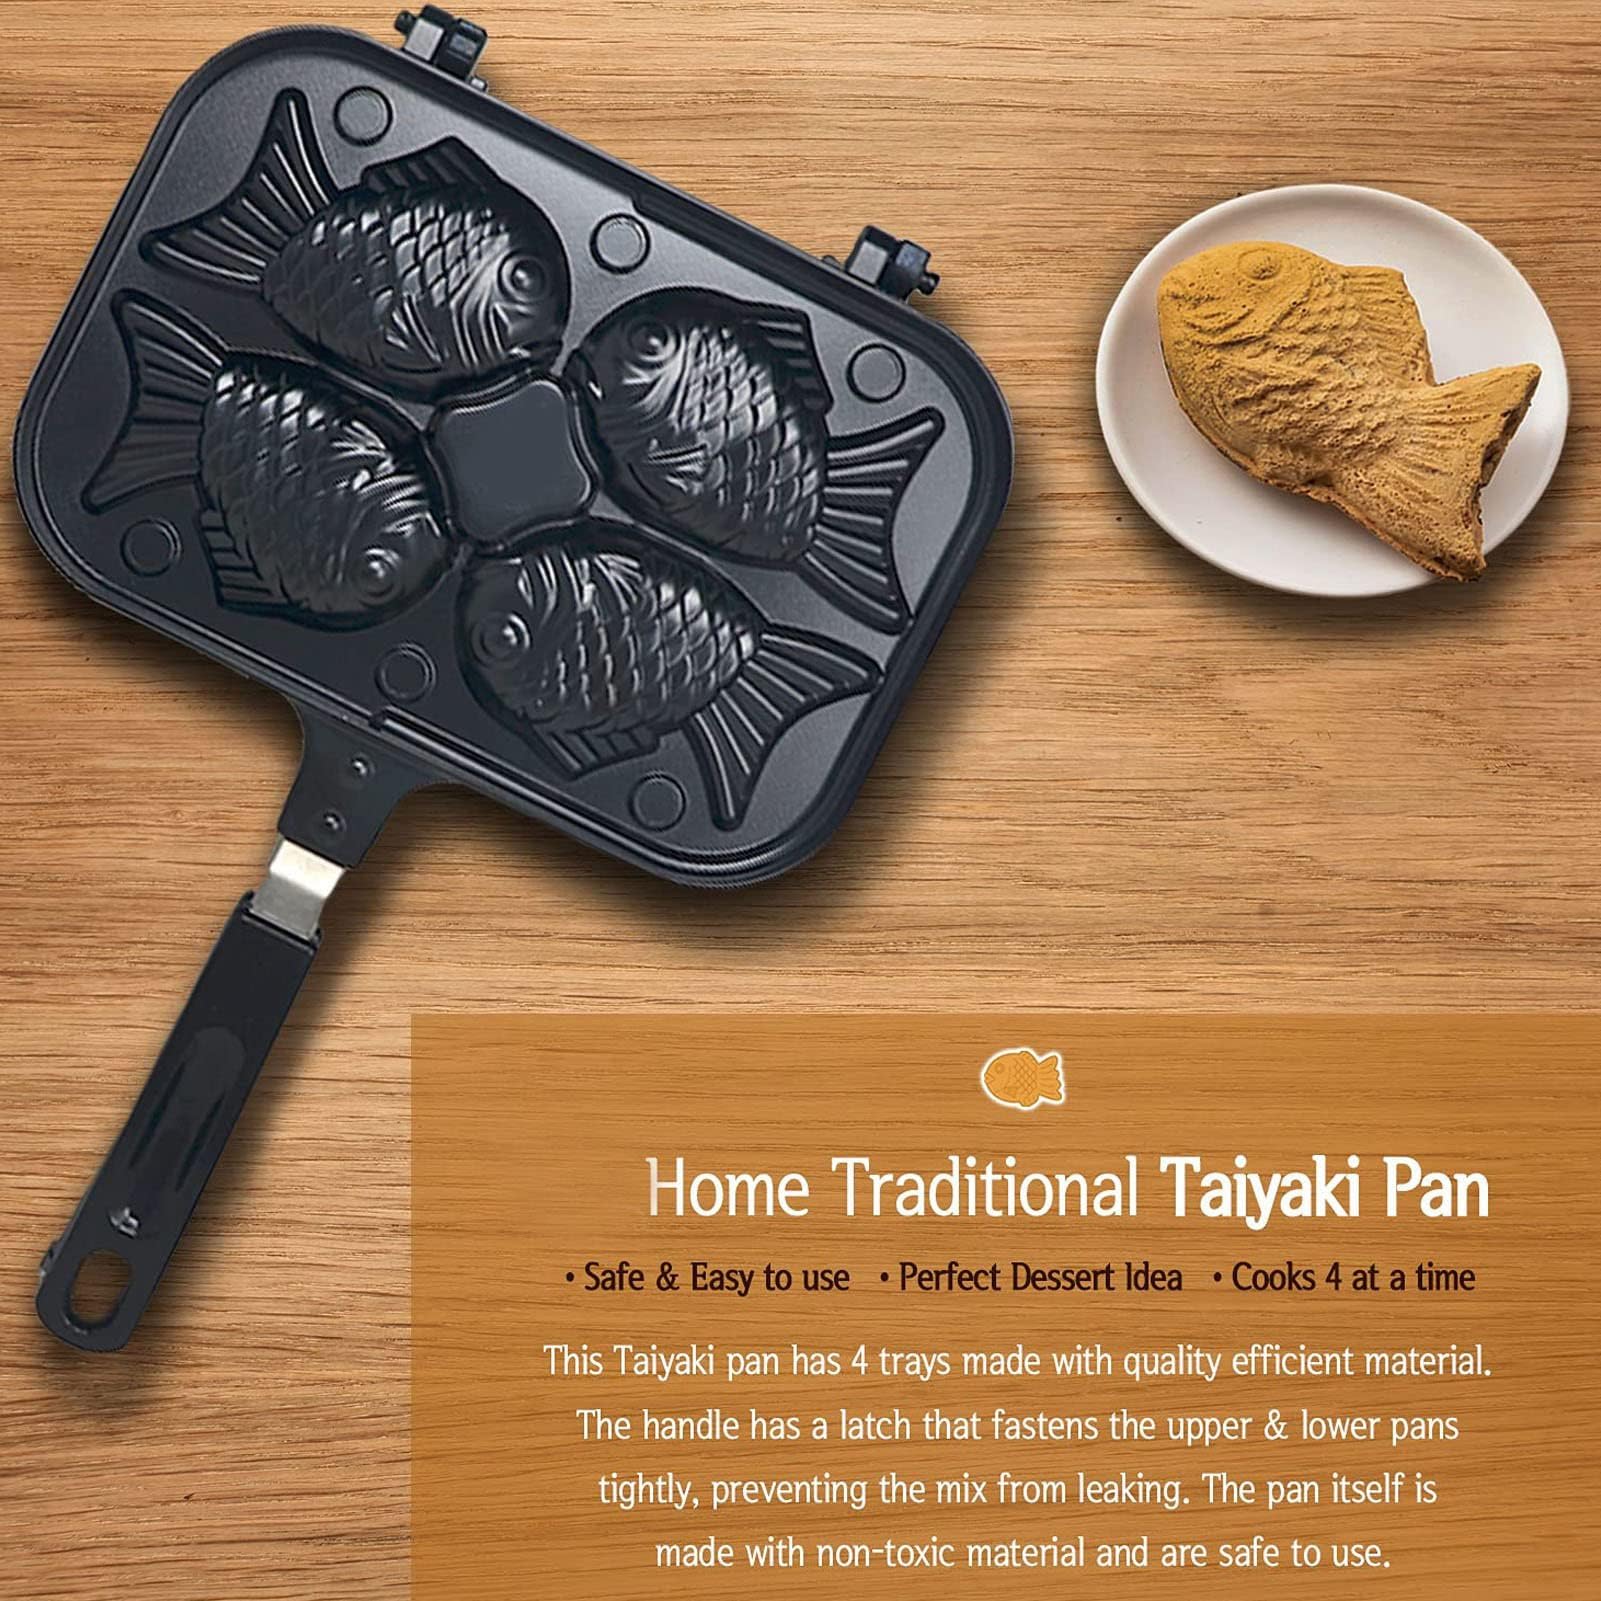 Taiyaki Fish-Shaped Cake Pan, Non-stick Waffle Cake Maker with Long Handle Pancake Baking Double Pan Mold Japanese Fish-Shaped Hot Cake Maker for Home DIY Cooking Party Dessert